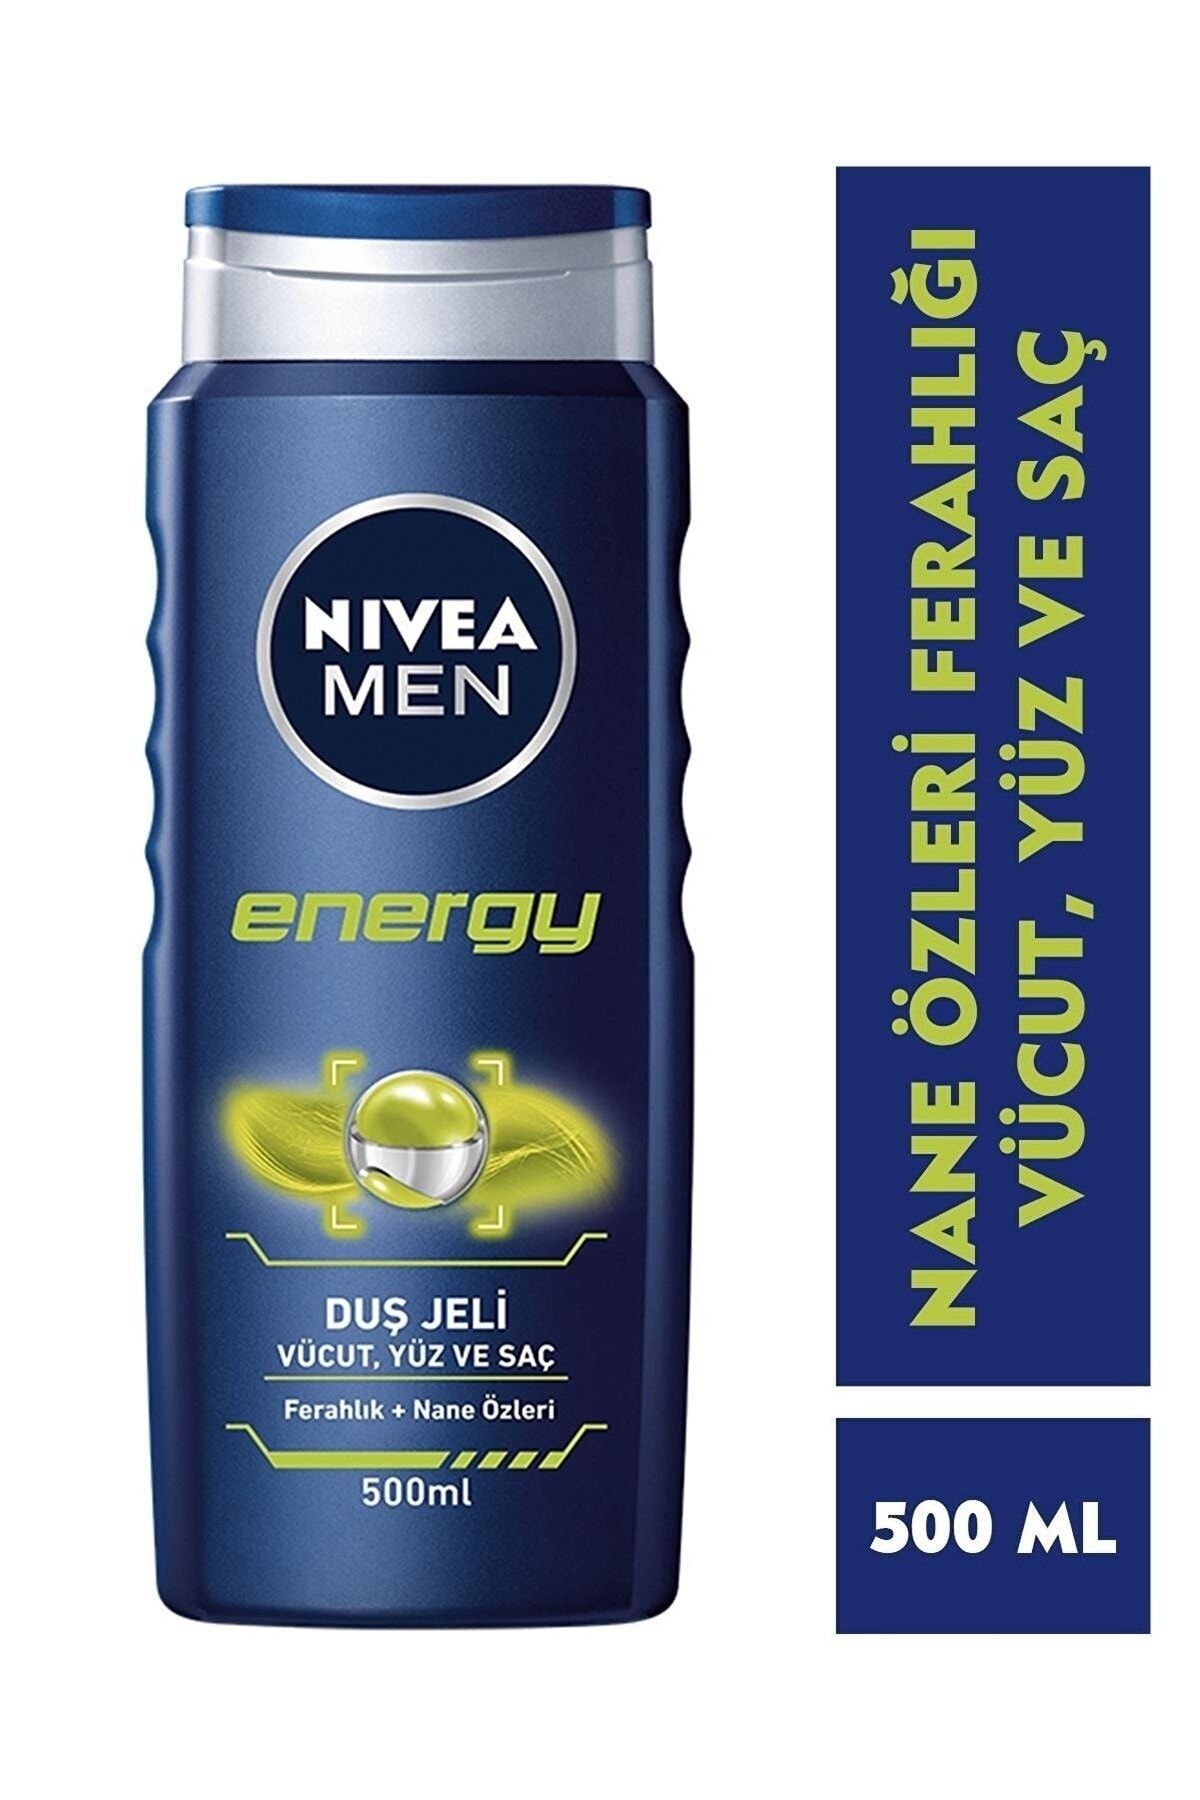 NIVEA Men Energy Duş Jeli 500ml, 3'ü 1 Arada Komple Bakım, Vücut, Saç Ve Yüz Için Men